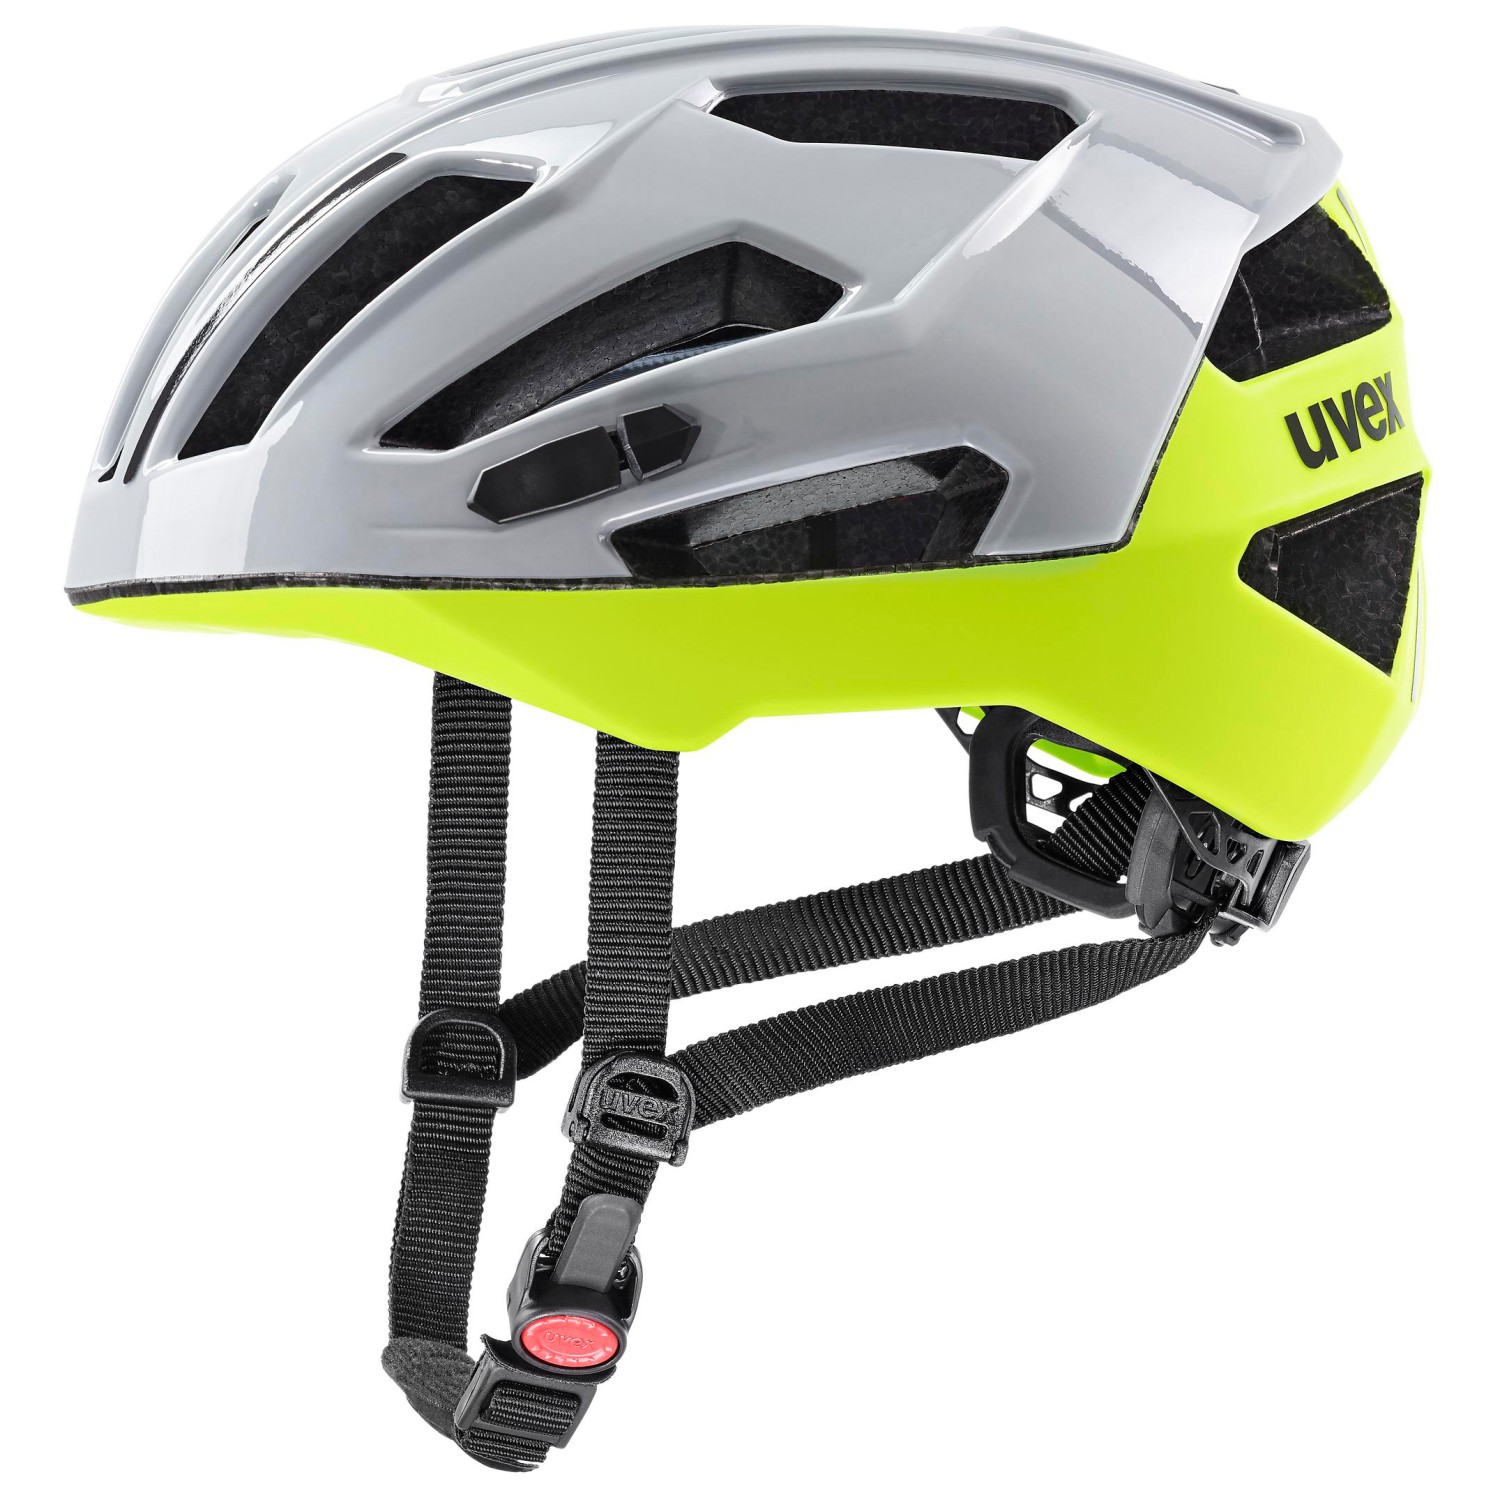 Велосипедный шлем Uvex Gravel X, цвет Rhino/Neon Yellow шлем велосипедный детский регулируемый с вентиляционными отверстиями tt 018 rockbros